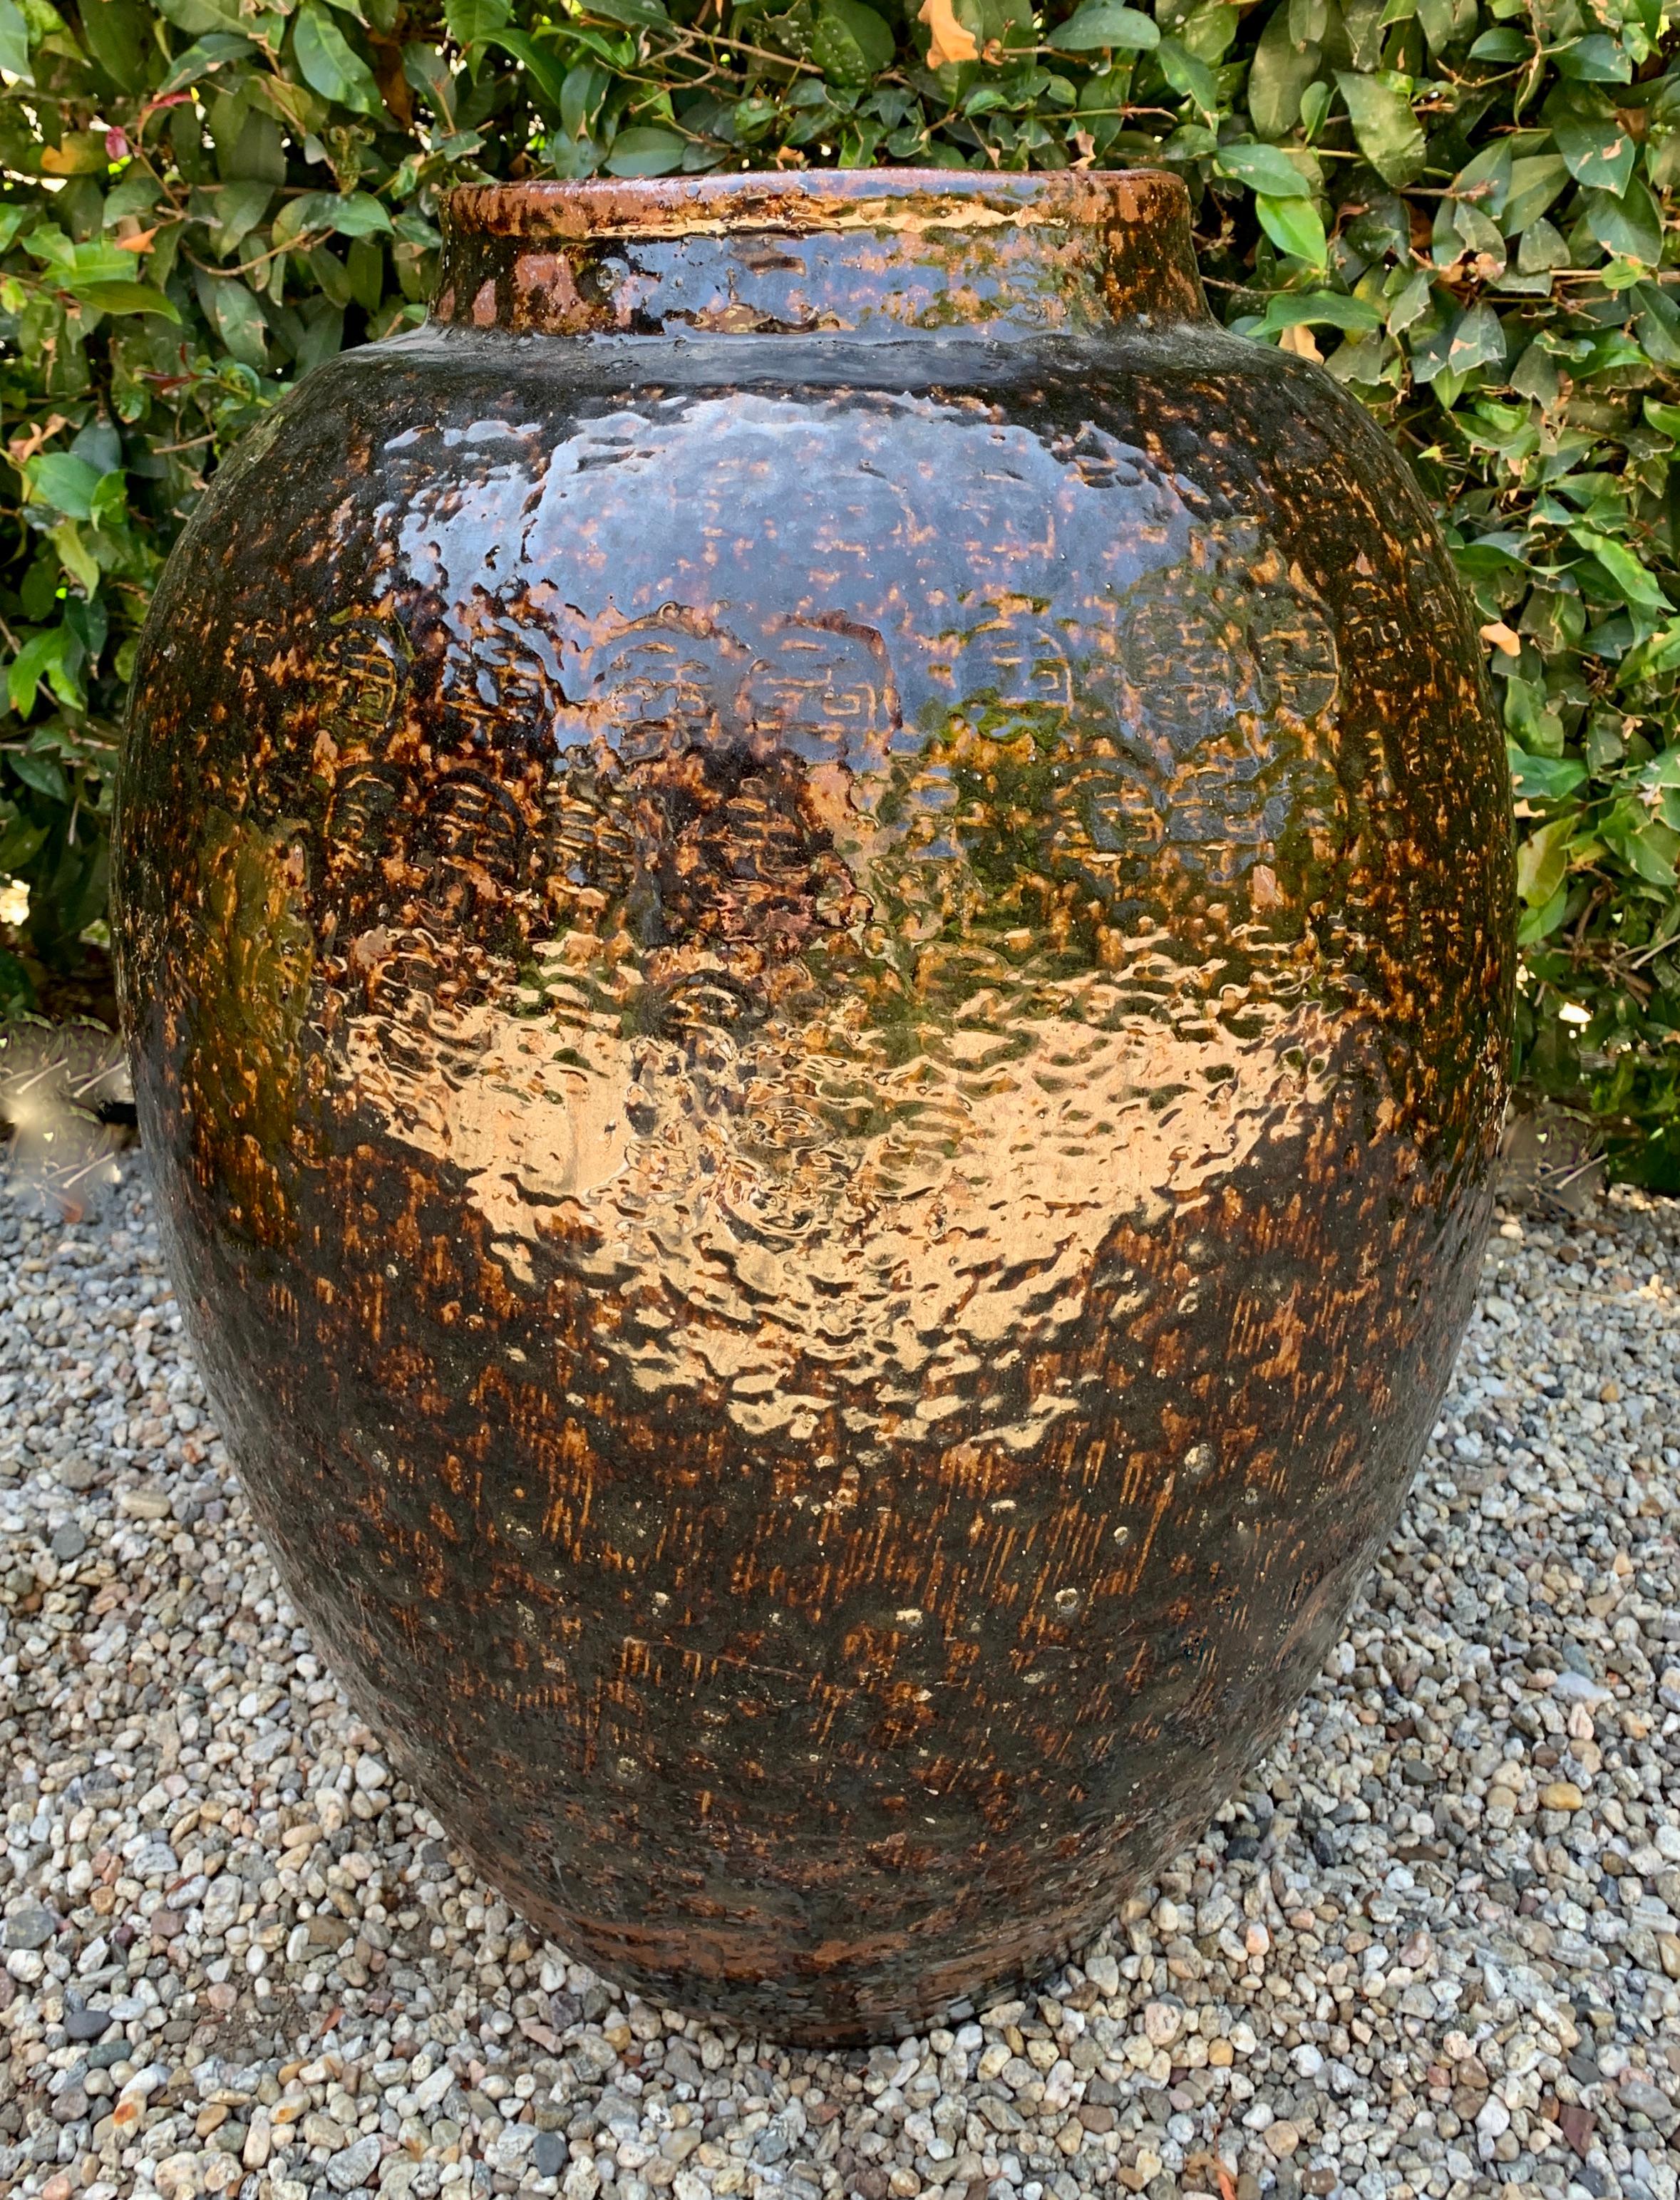 Chinesische glasierte Terrakotta-Urne oder -Pflanzgefäß - ein wunderschönes glasiertes Gefäß für den Garten oder für Innenräume. Starke Glasur mit einigen durchscheinenden Motiven.